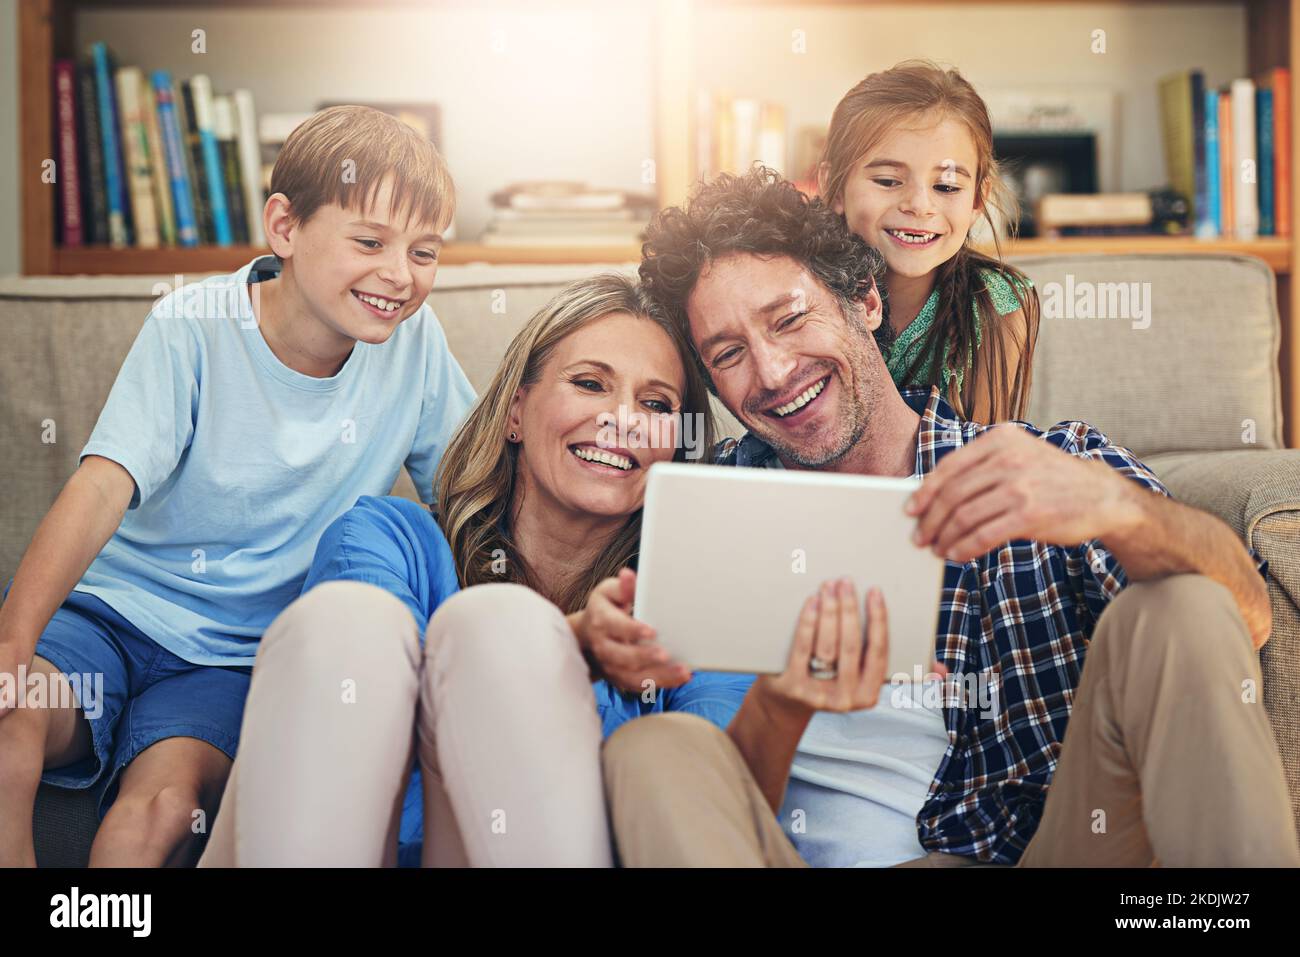 Aus Familienzeiten wird Bildschirmzeit. Eine glückliche Familie, die zu Hause ein digitales Tablet nutzt. Stockfoto